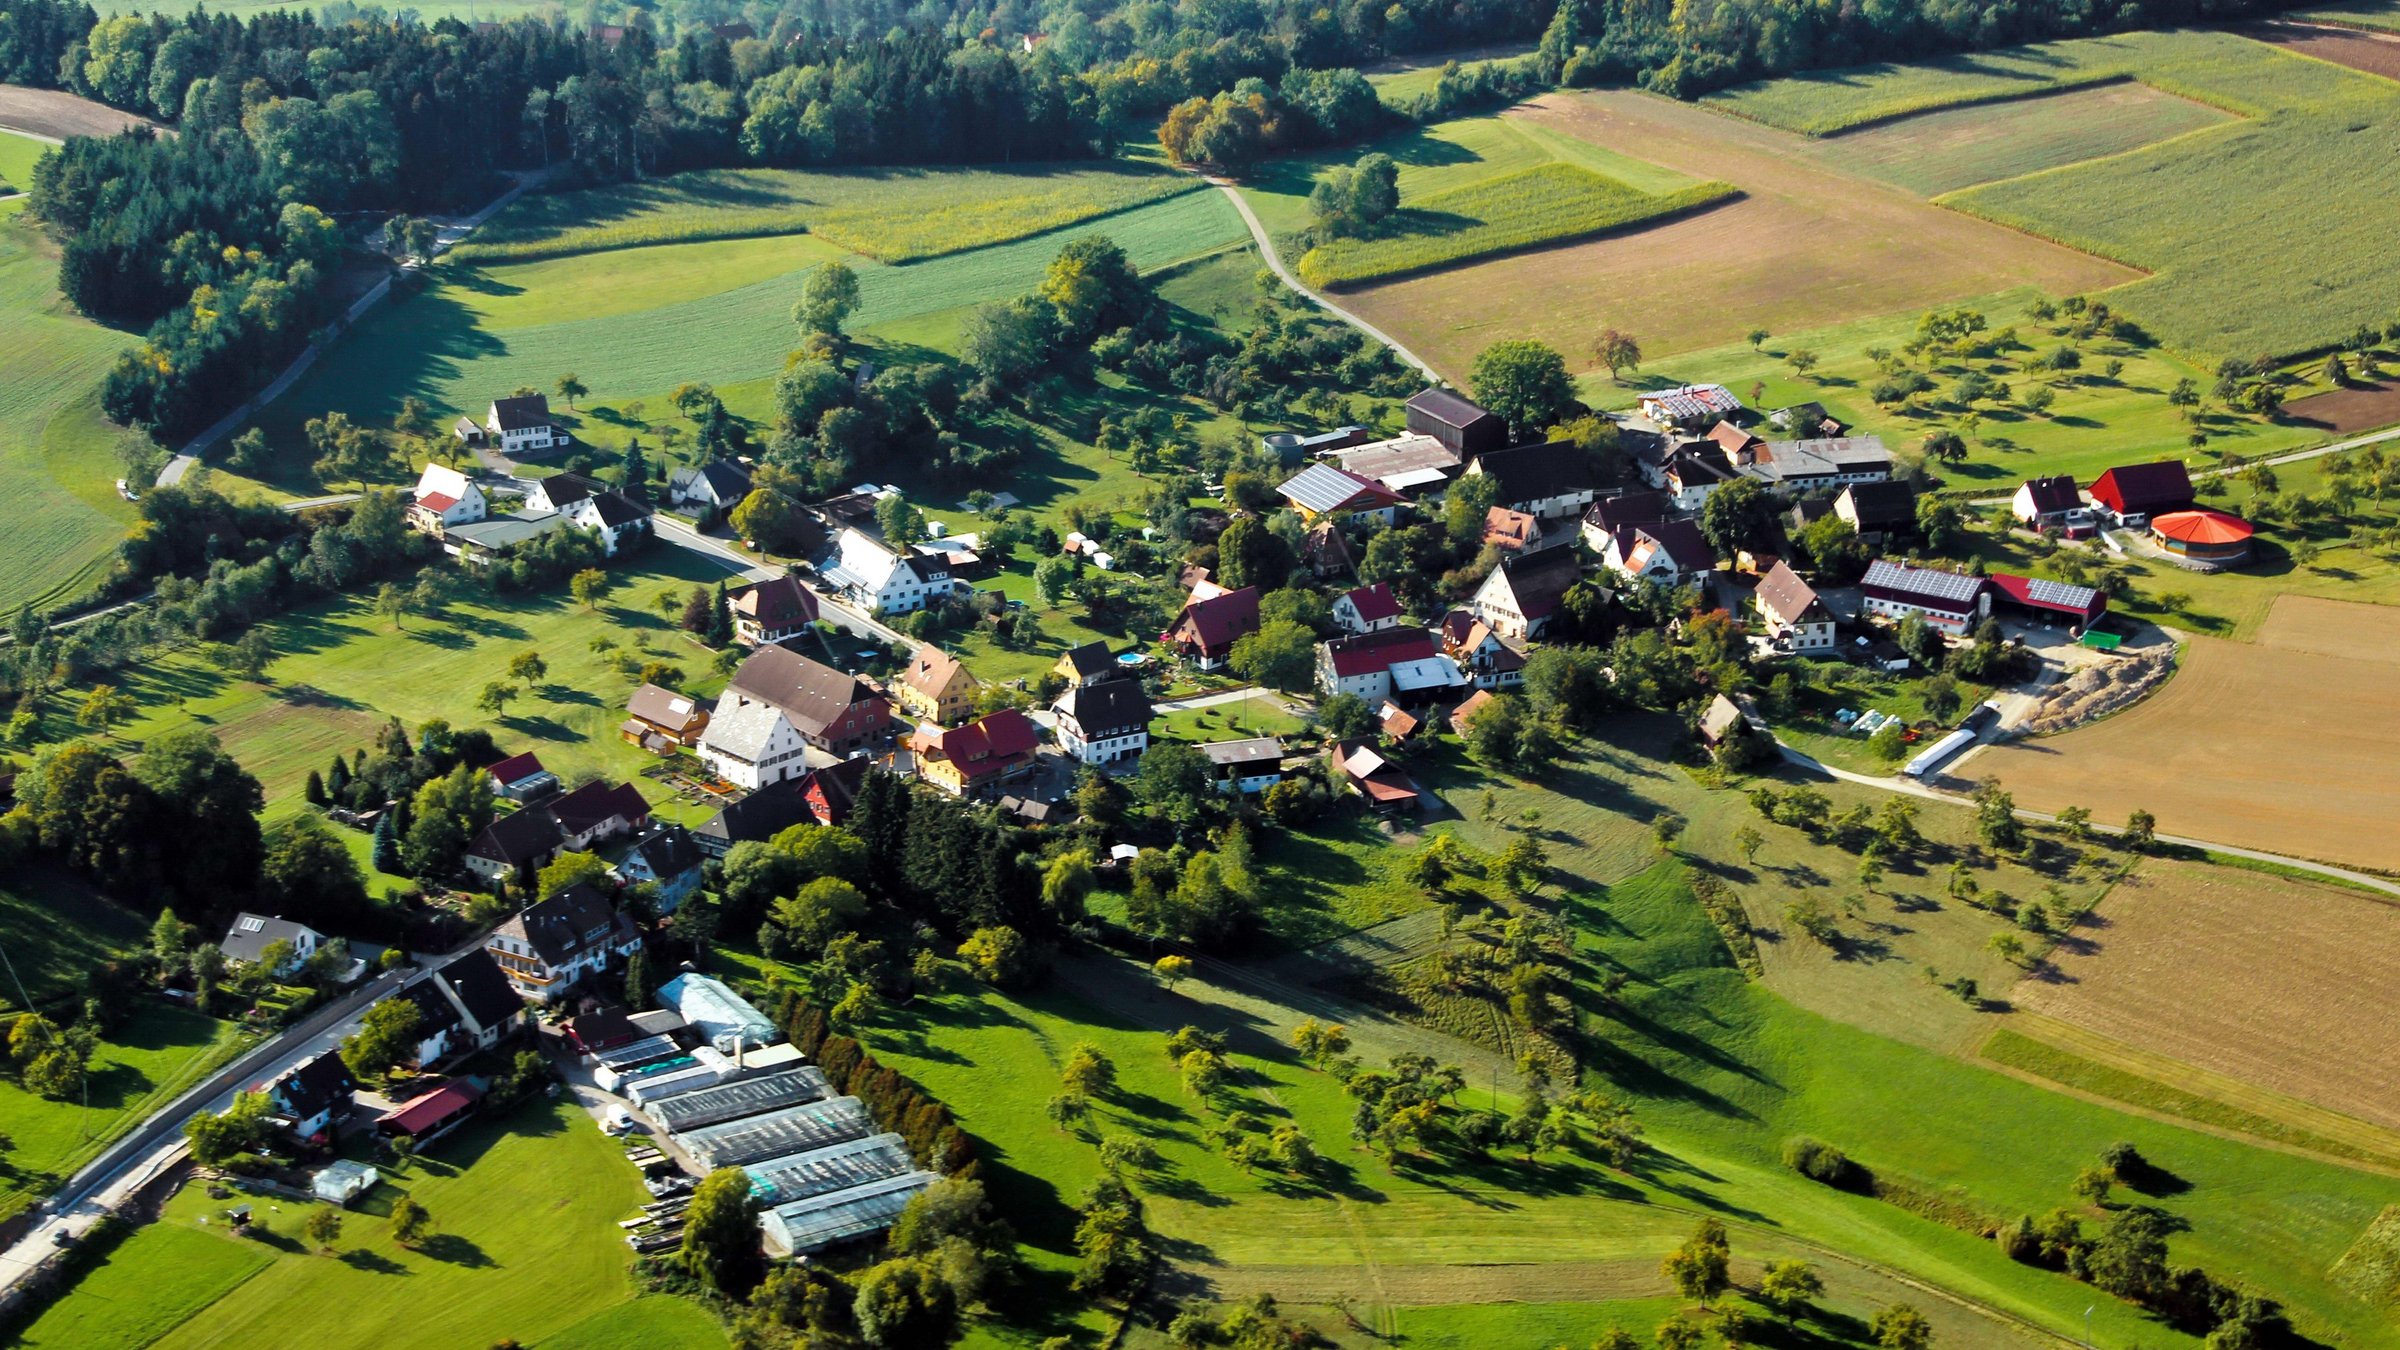 Grundelshausen